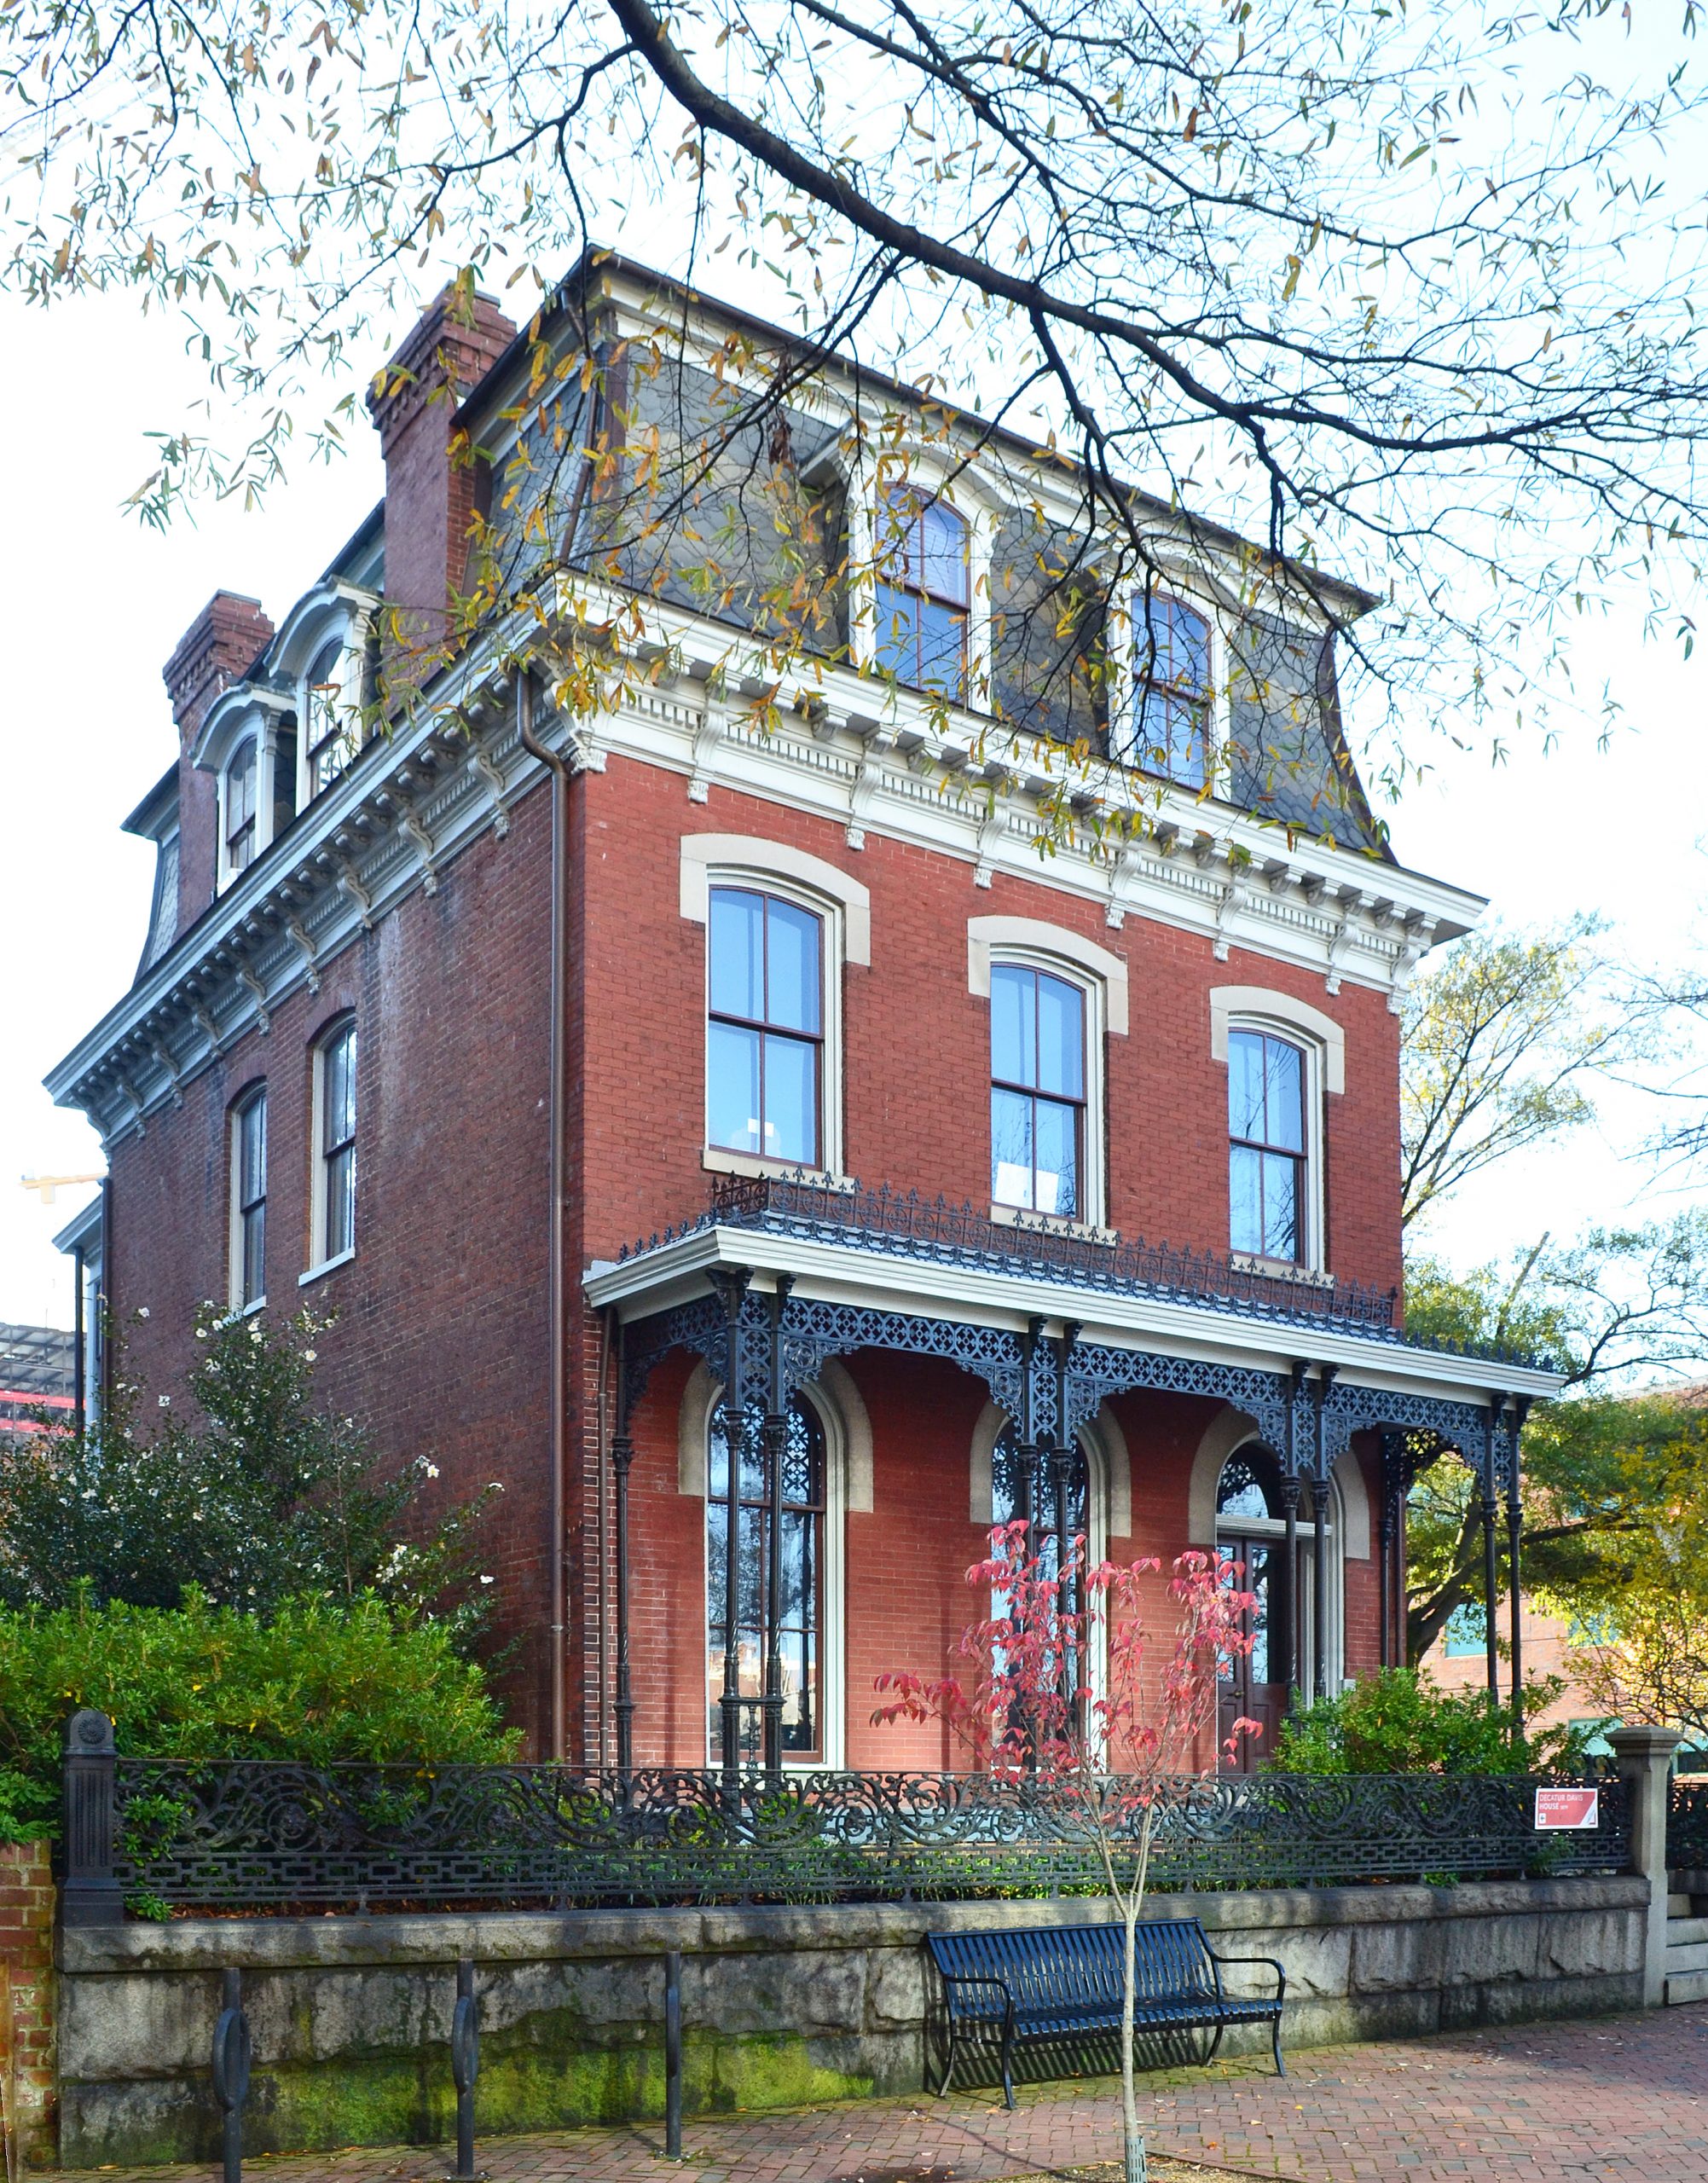 Decatur O. Davis House